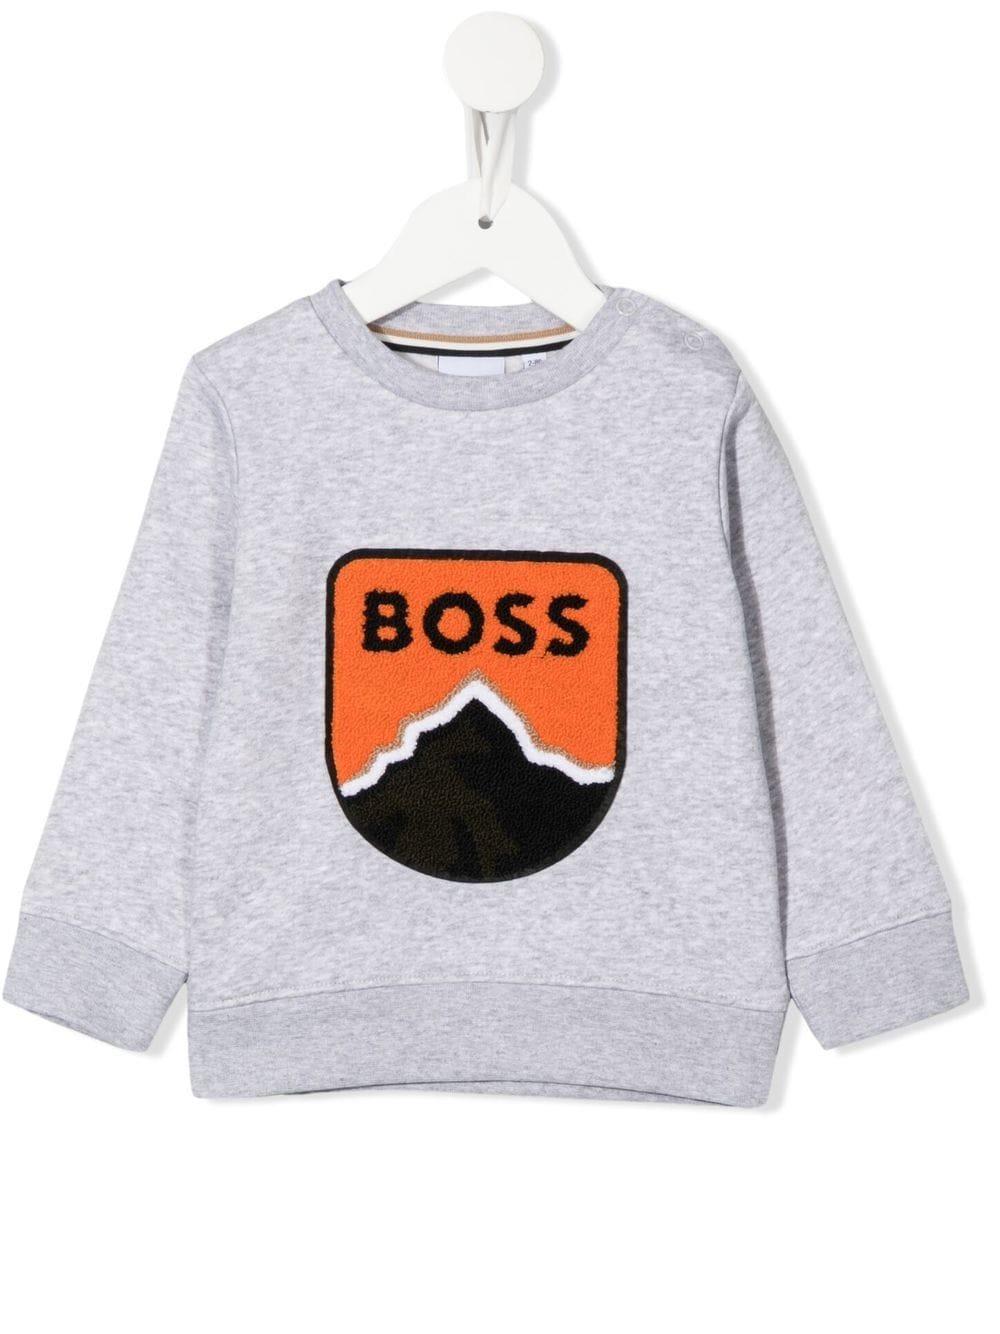 Hugo Boss Babies' Sweatshirt With Sponge Crest In Grigio